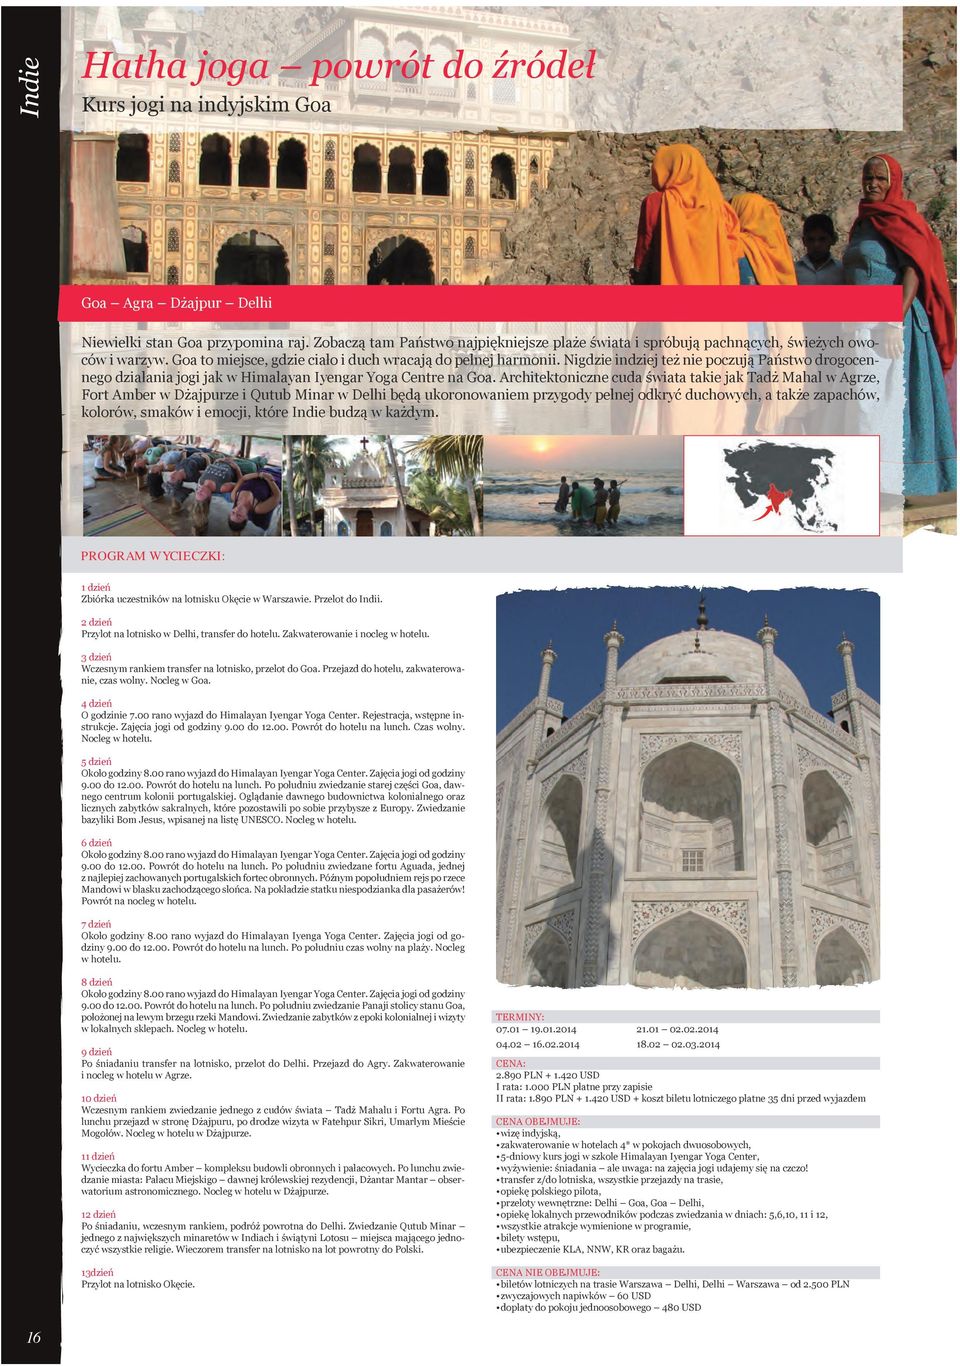 Architektoniczne cuda świata takie jak Tadż Mahal w Agrze, Fort Amber w Dżajpurze i Qutub Minar w Delhi będą ukoronowaniem przygody pełnej odkryć duchowych, a także zapachów, kolorów, smaków i